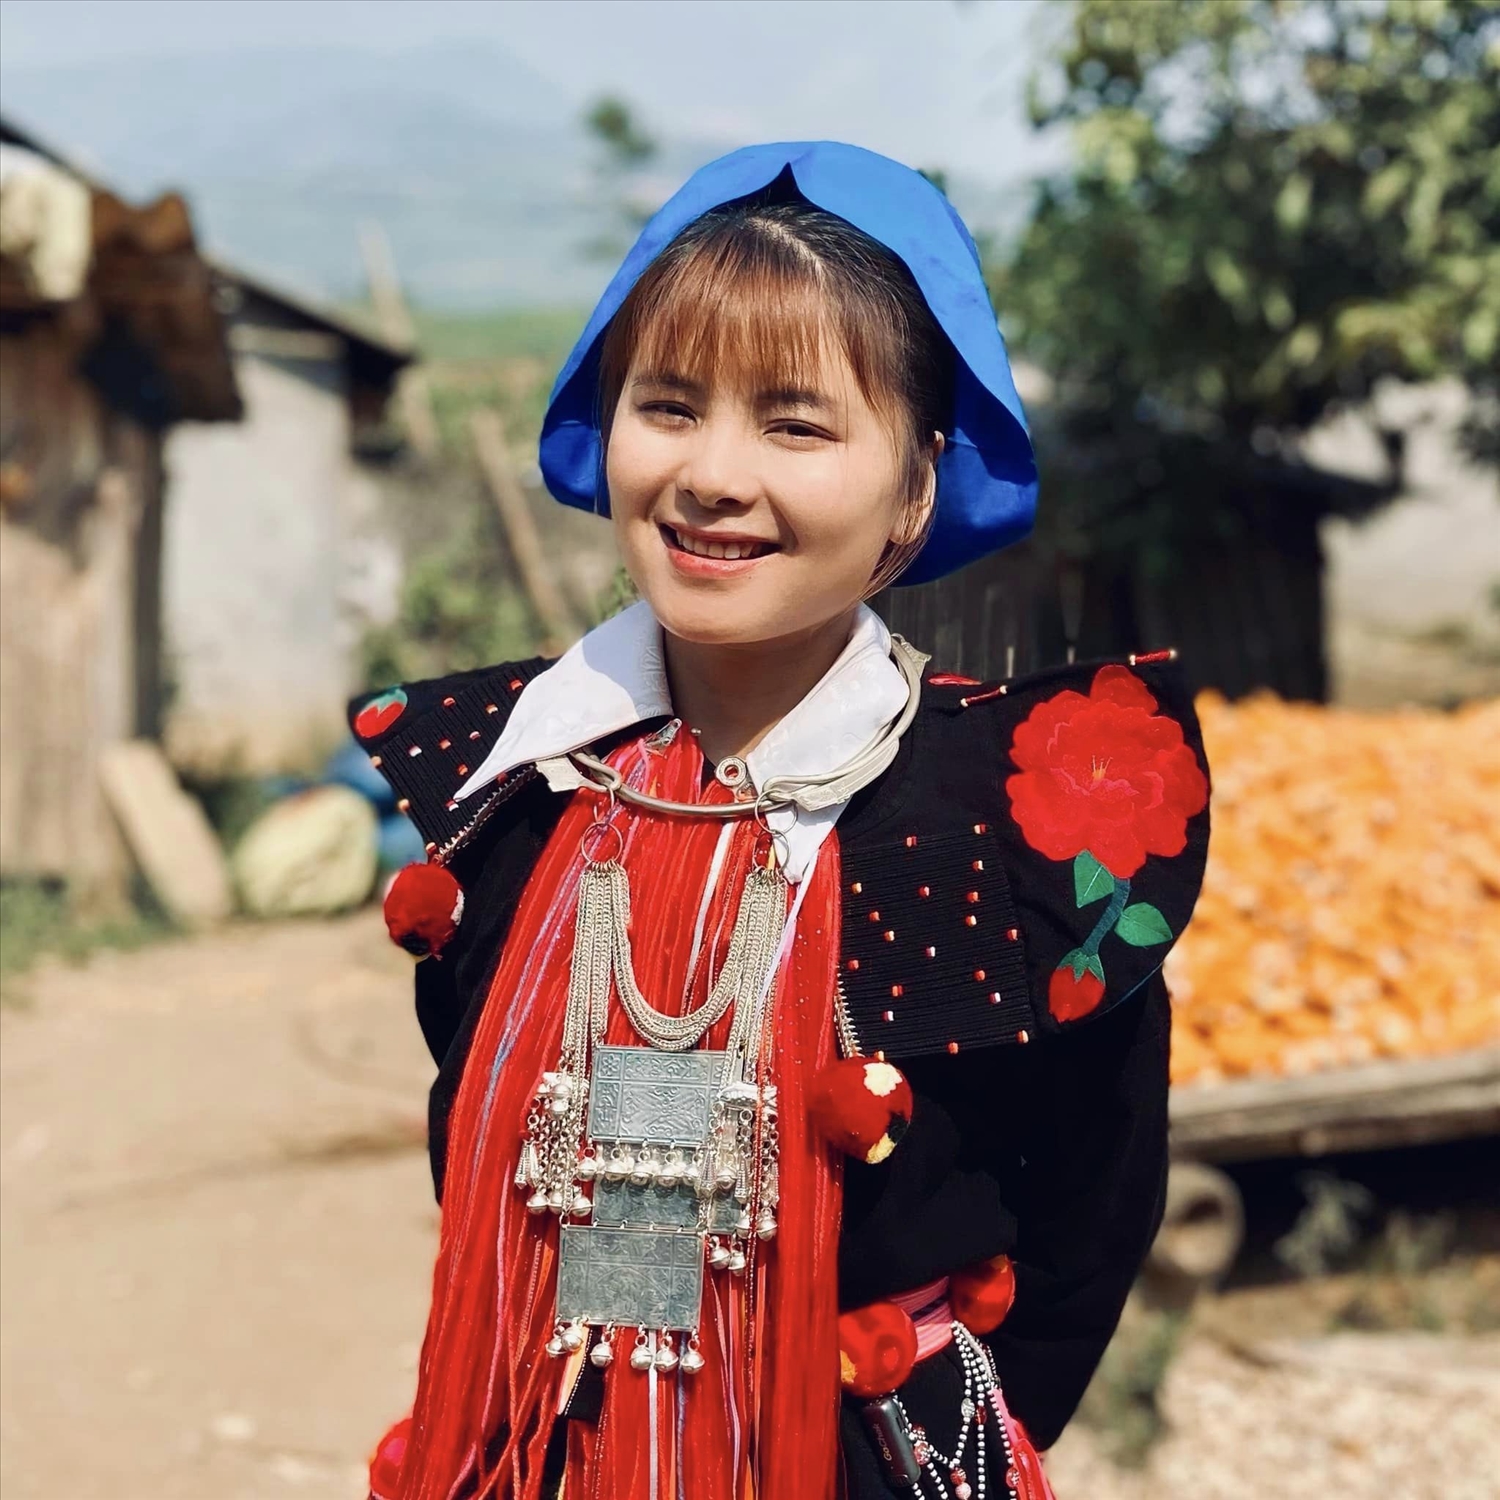 Hình ảnh một cô gái luôn rạng rỡ trong bộ trang phục dân tộc truyền thống đã trở thành điểm nhấn quen thuộc trong các video của cô xuất hiện trên các nền tảng mạng xã hội